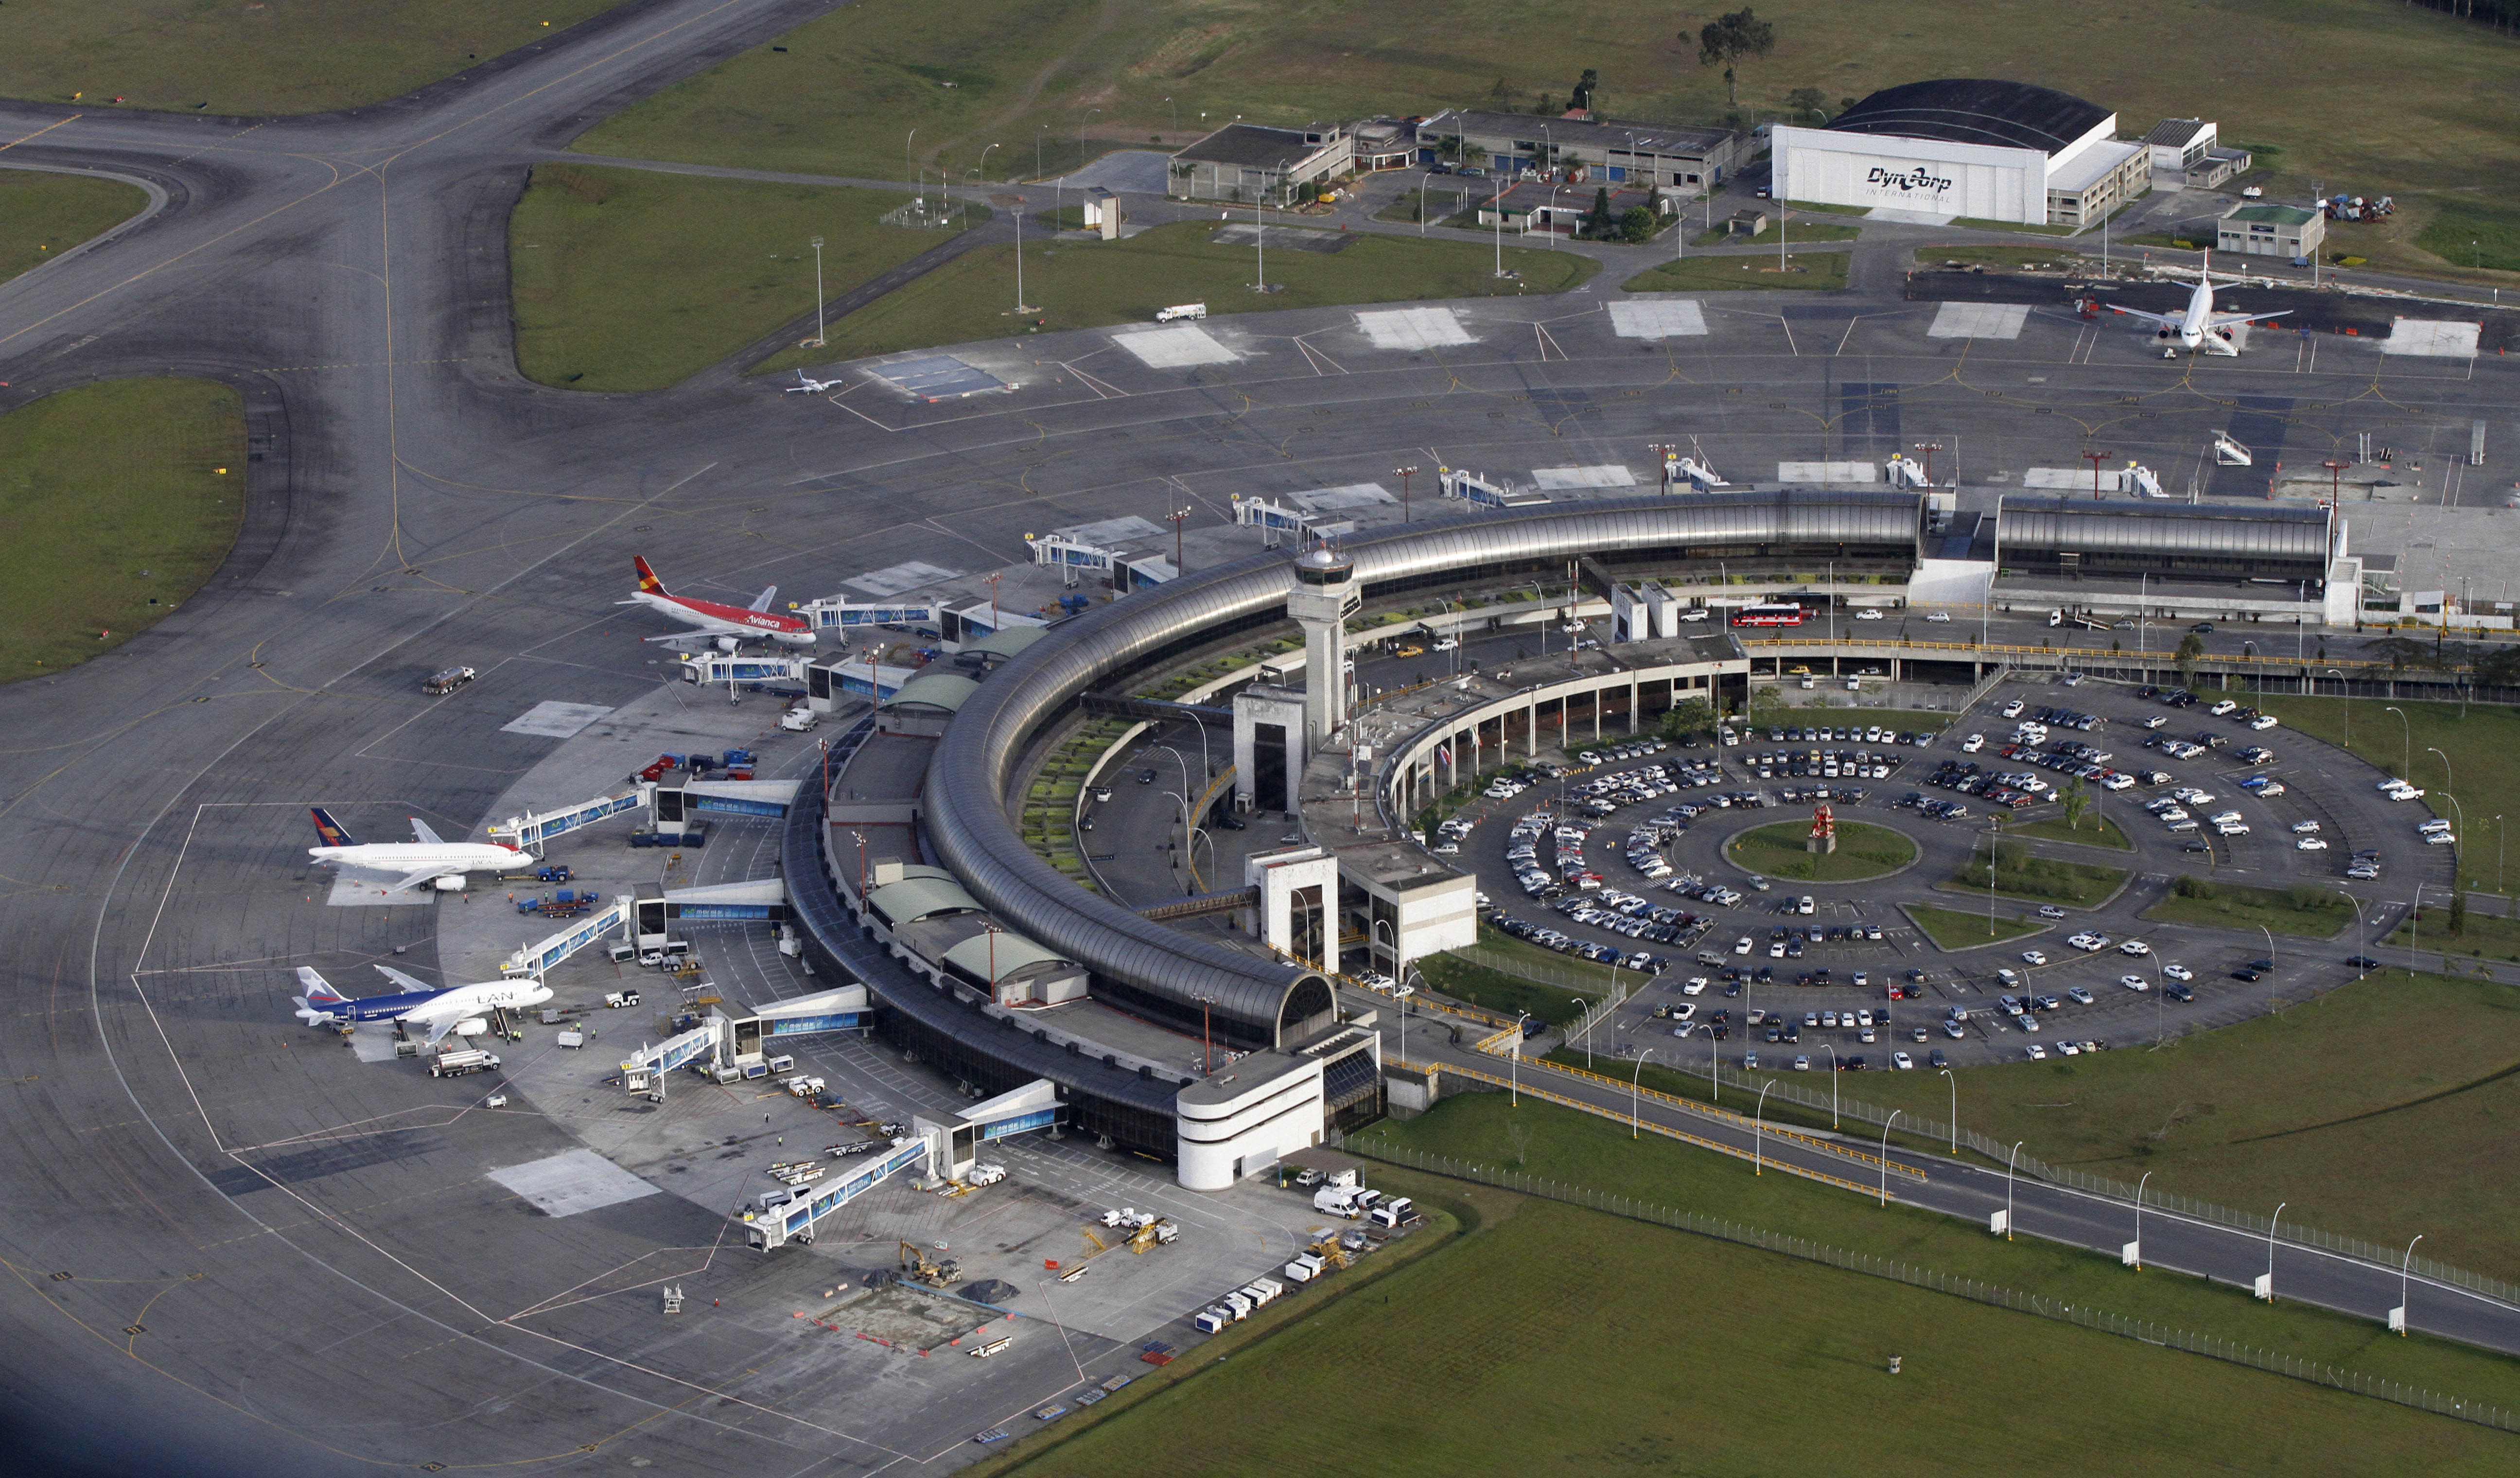 Aeropuerto José María Córdova que sirve a Medellín tendrá cierres en plena Semana Santa: horarios y recomendaciones